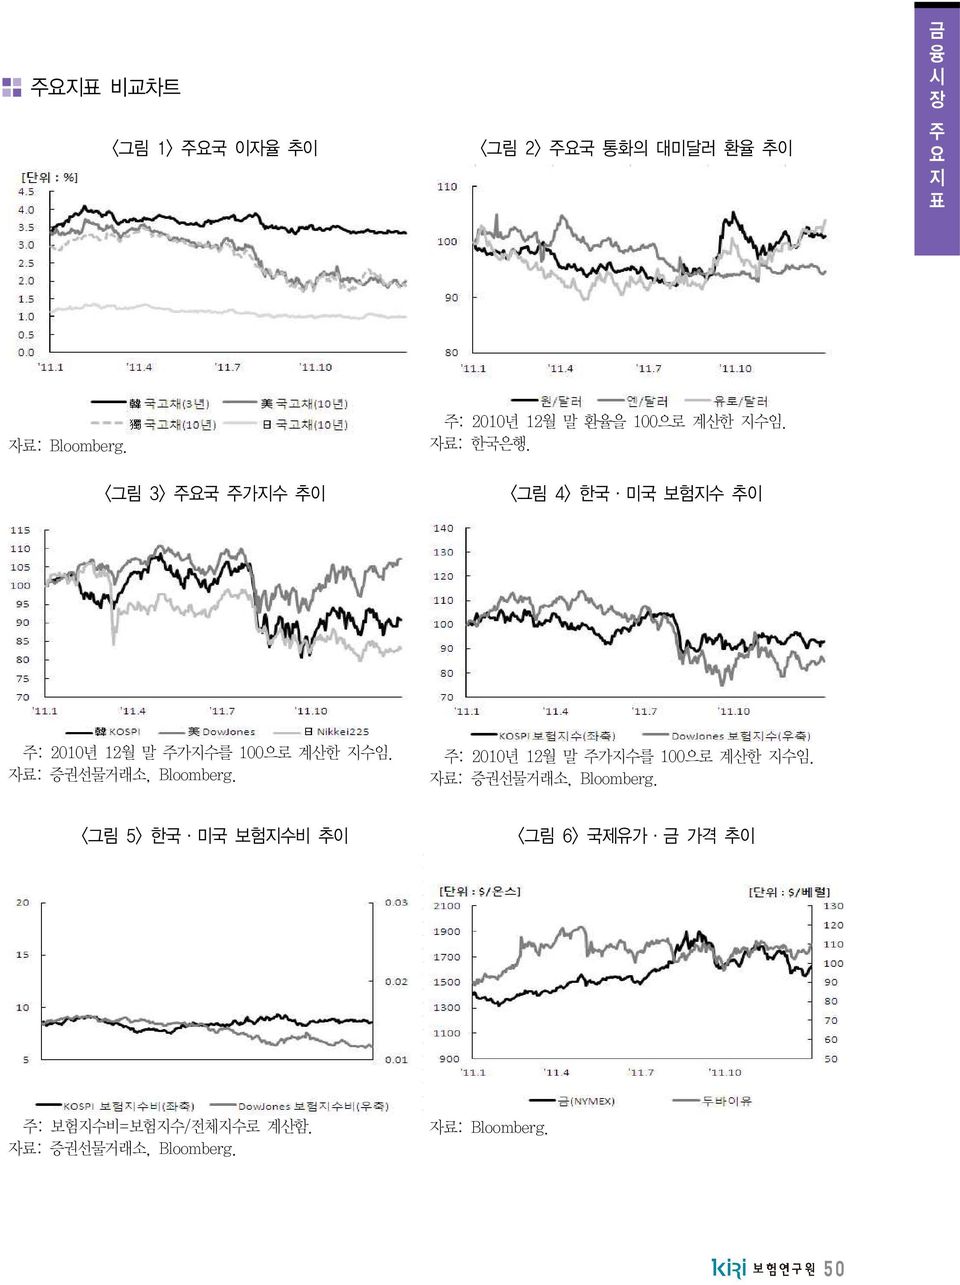 <그림 4> 한국 미국 보험지수 추이 주: 2010년 12월 말 주가지수를 100으로 계산한 지수임. 자료: 증권선물거래소, Bloomberg.